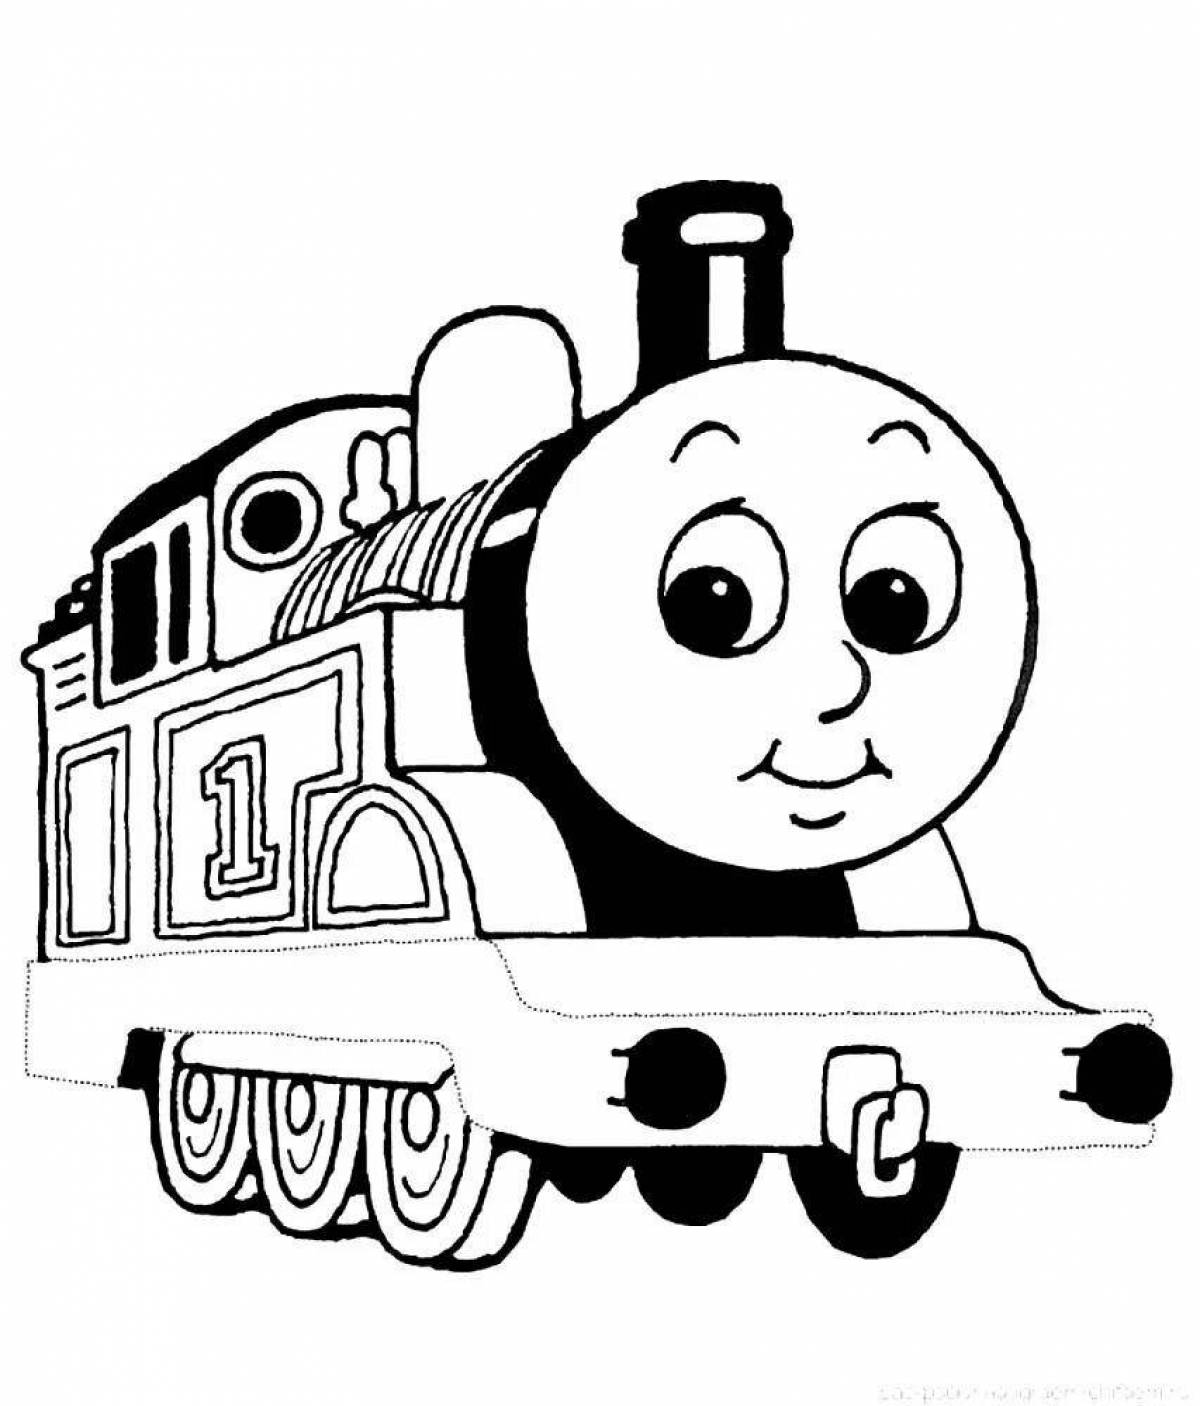 Adorable thomas locomotive coloring page